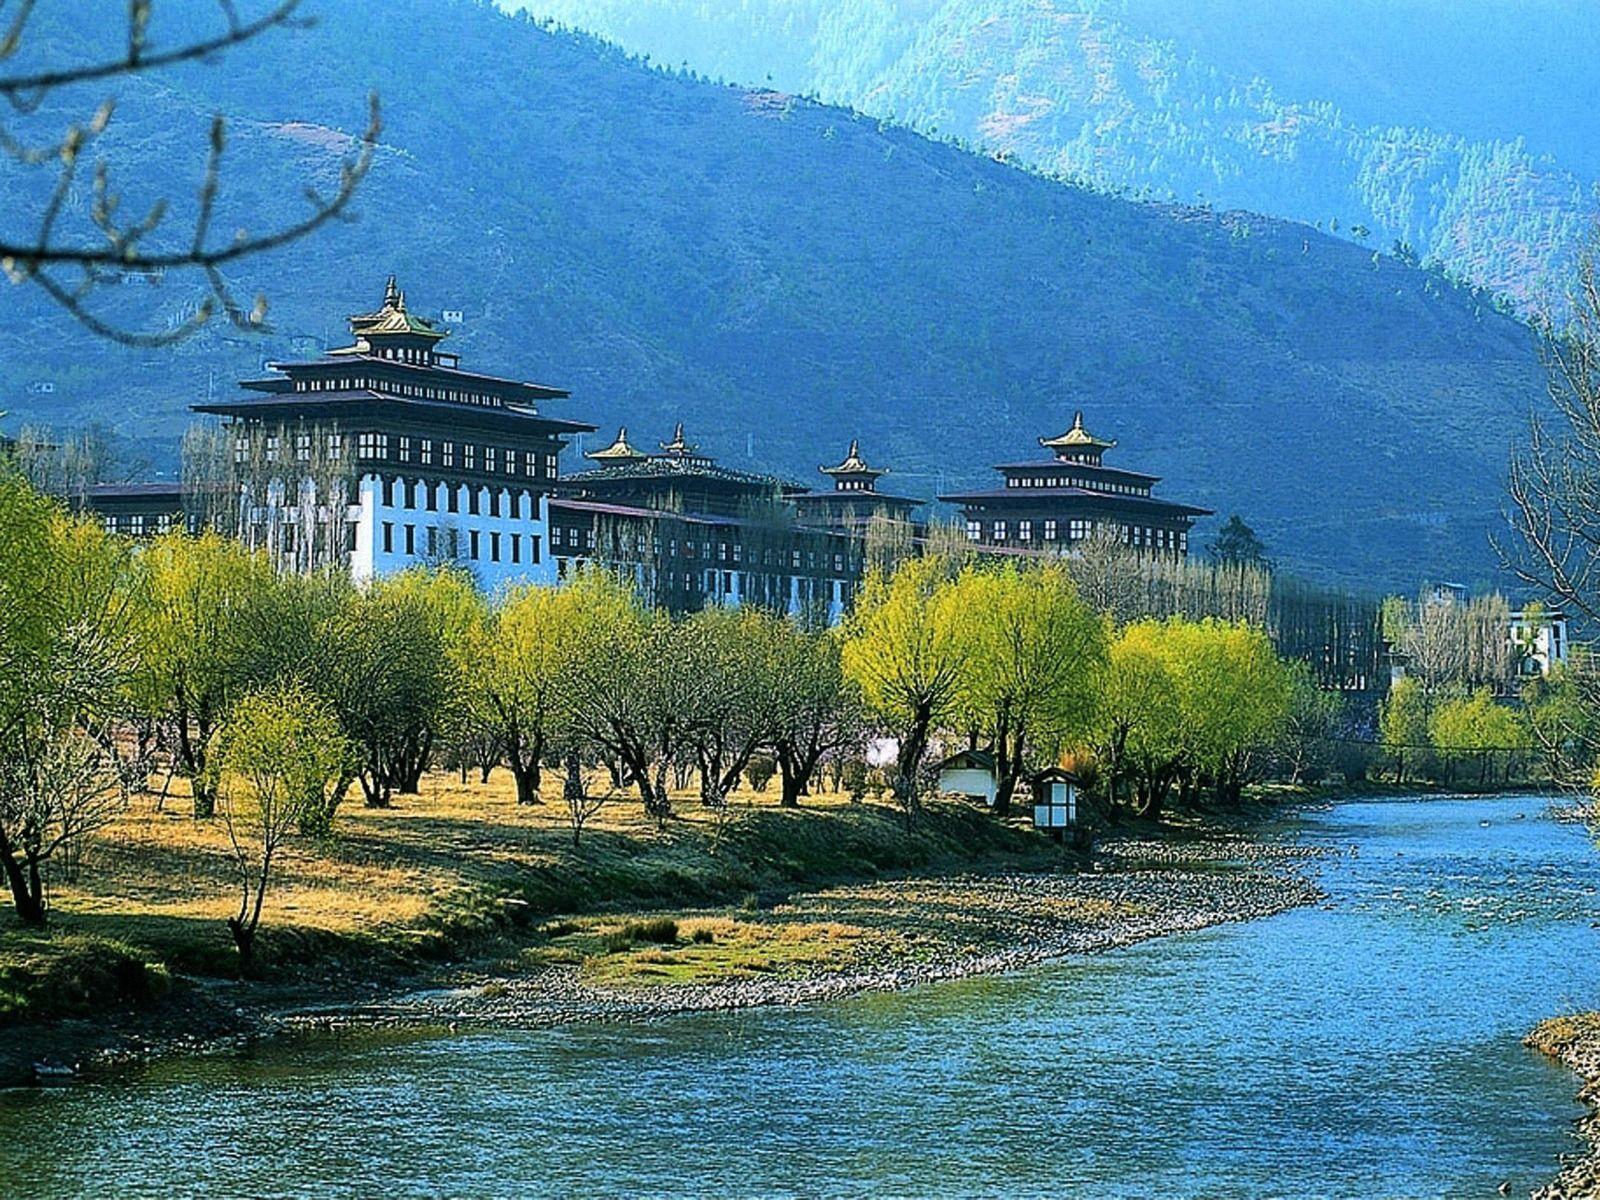 پادشاهی بوتان (Bhutan)